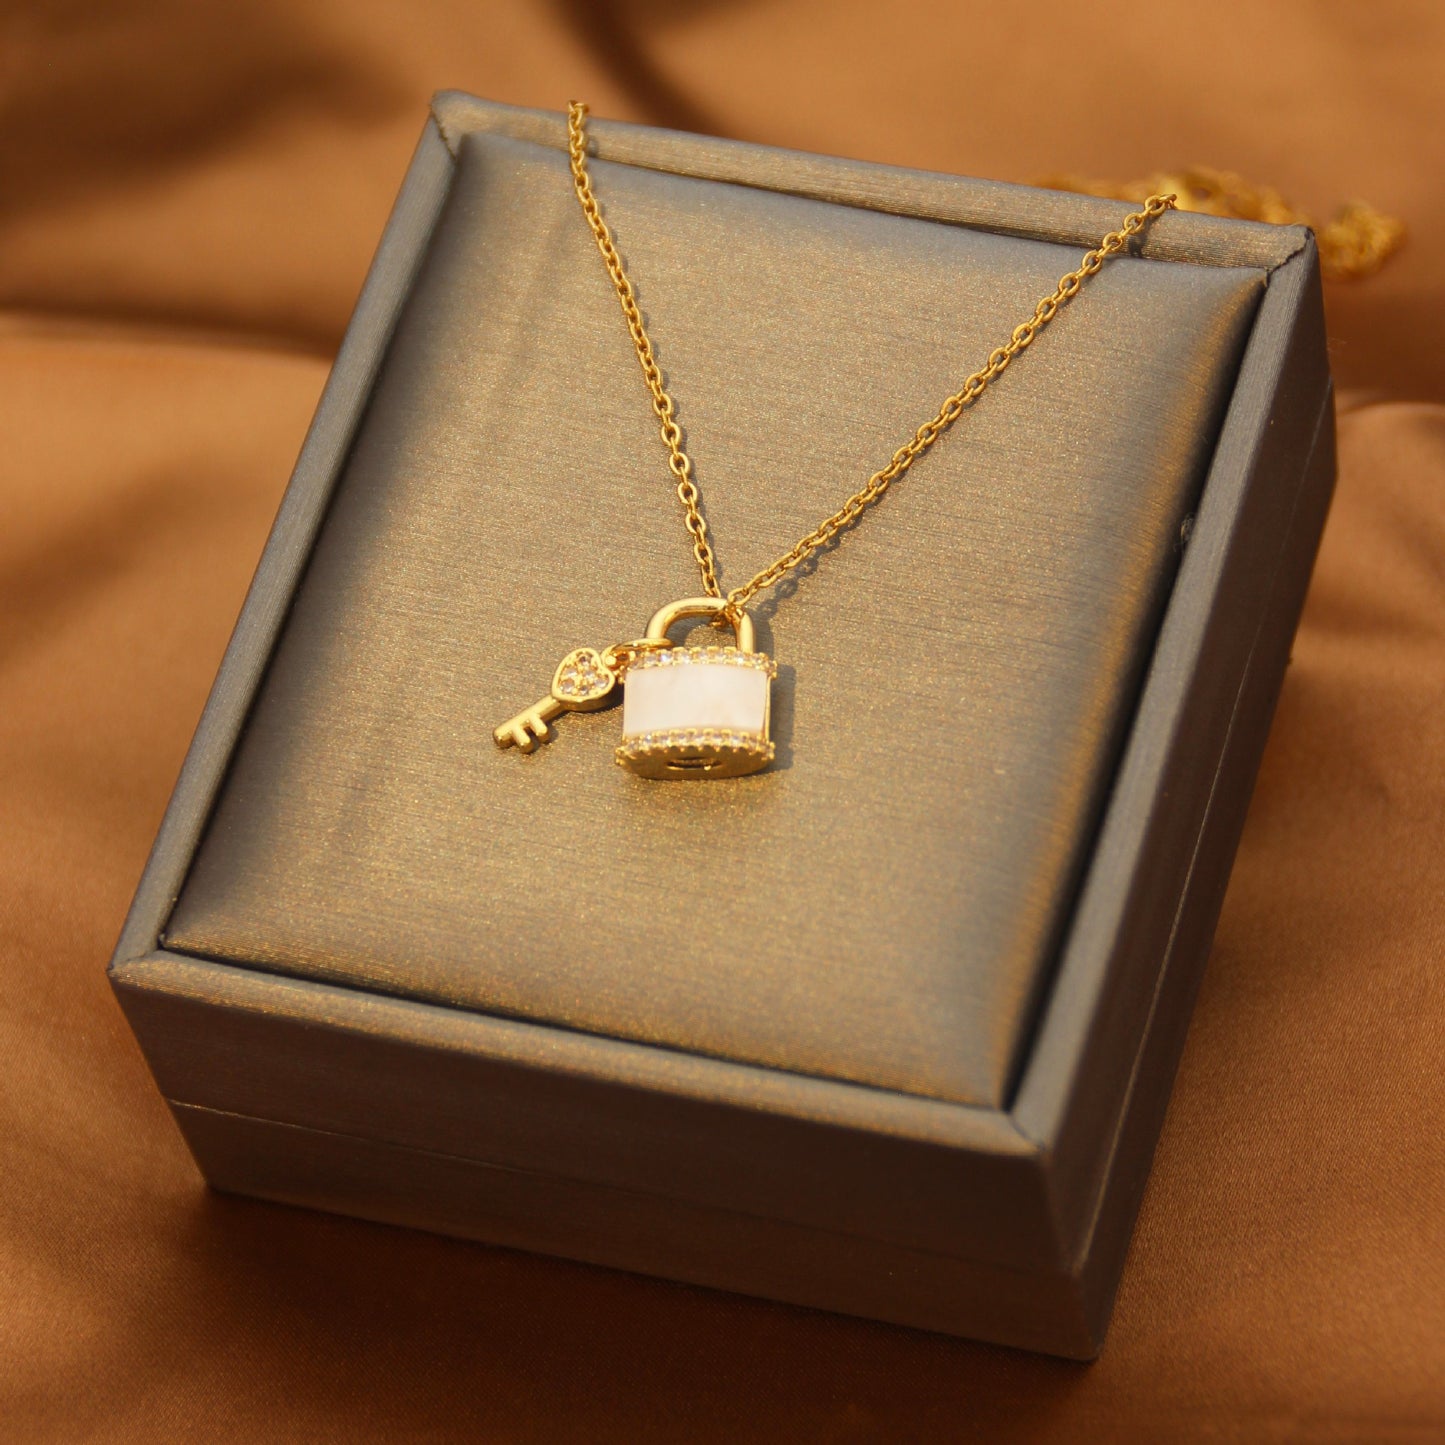 Women's Gentle Elegant Small Clear Lock Key Necklace